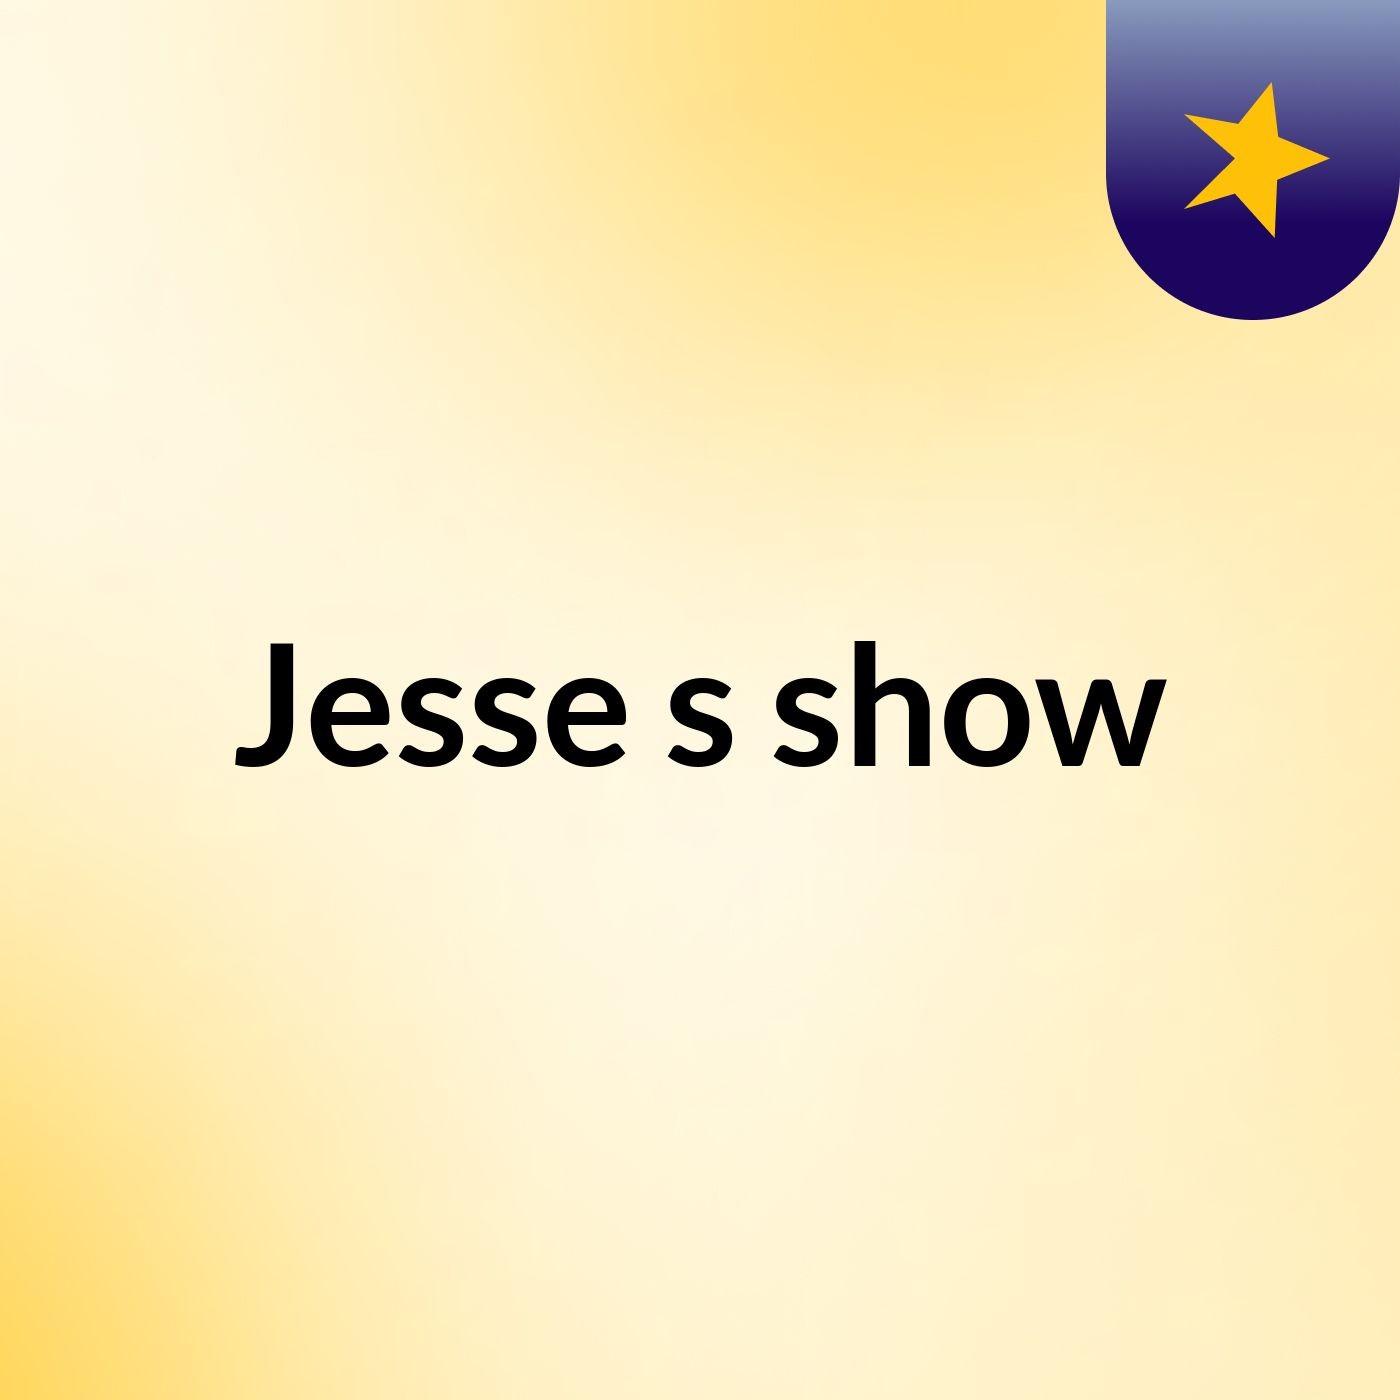 Jesse's show